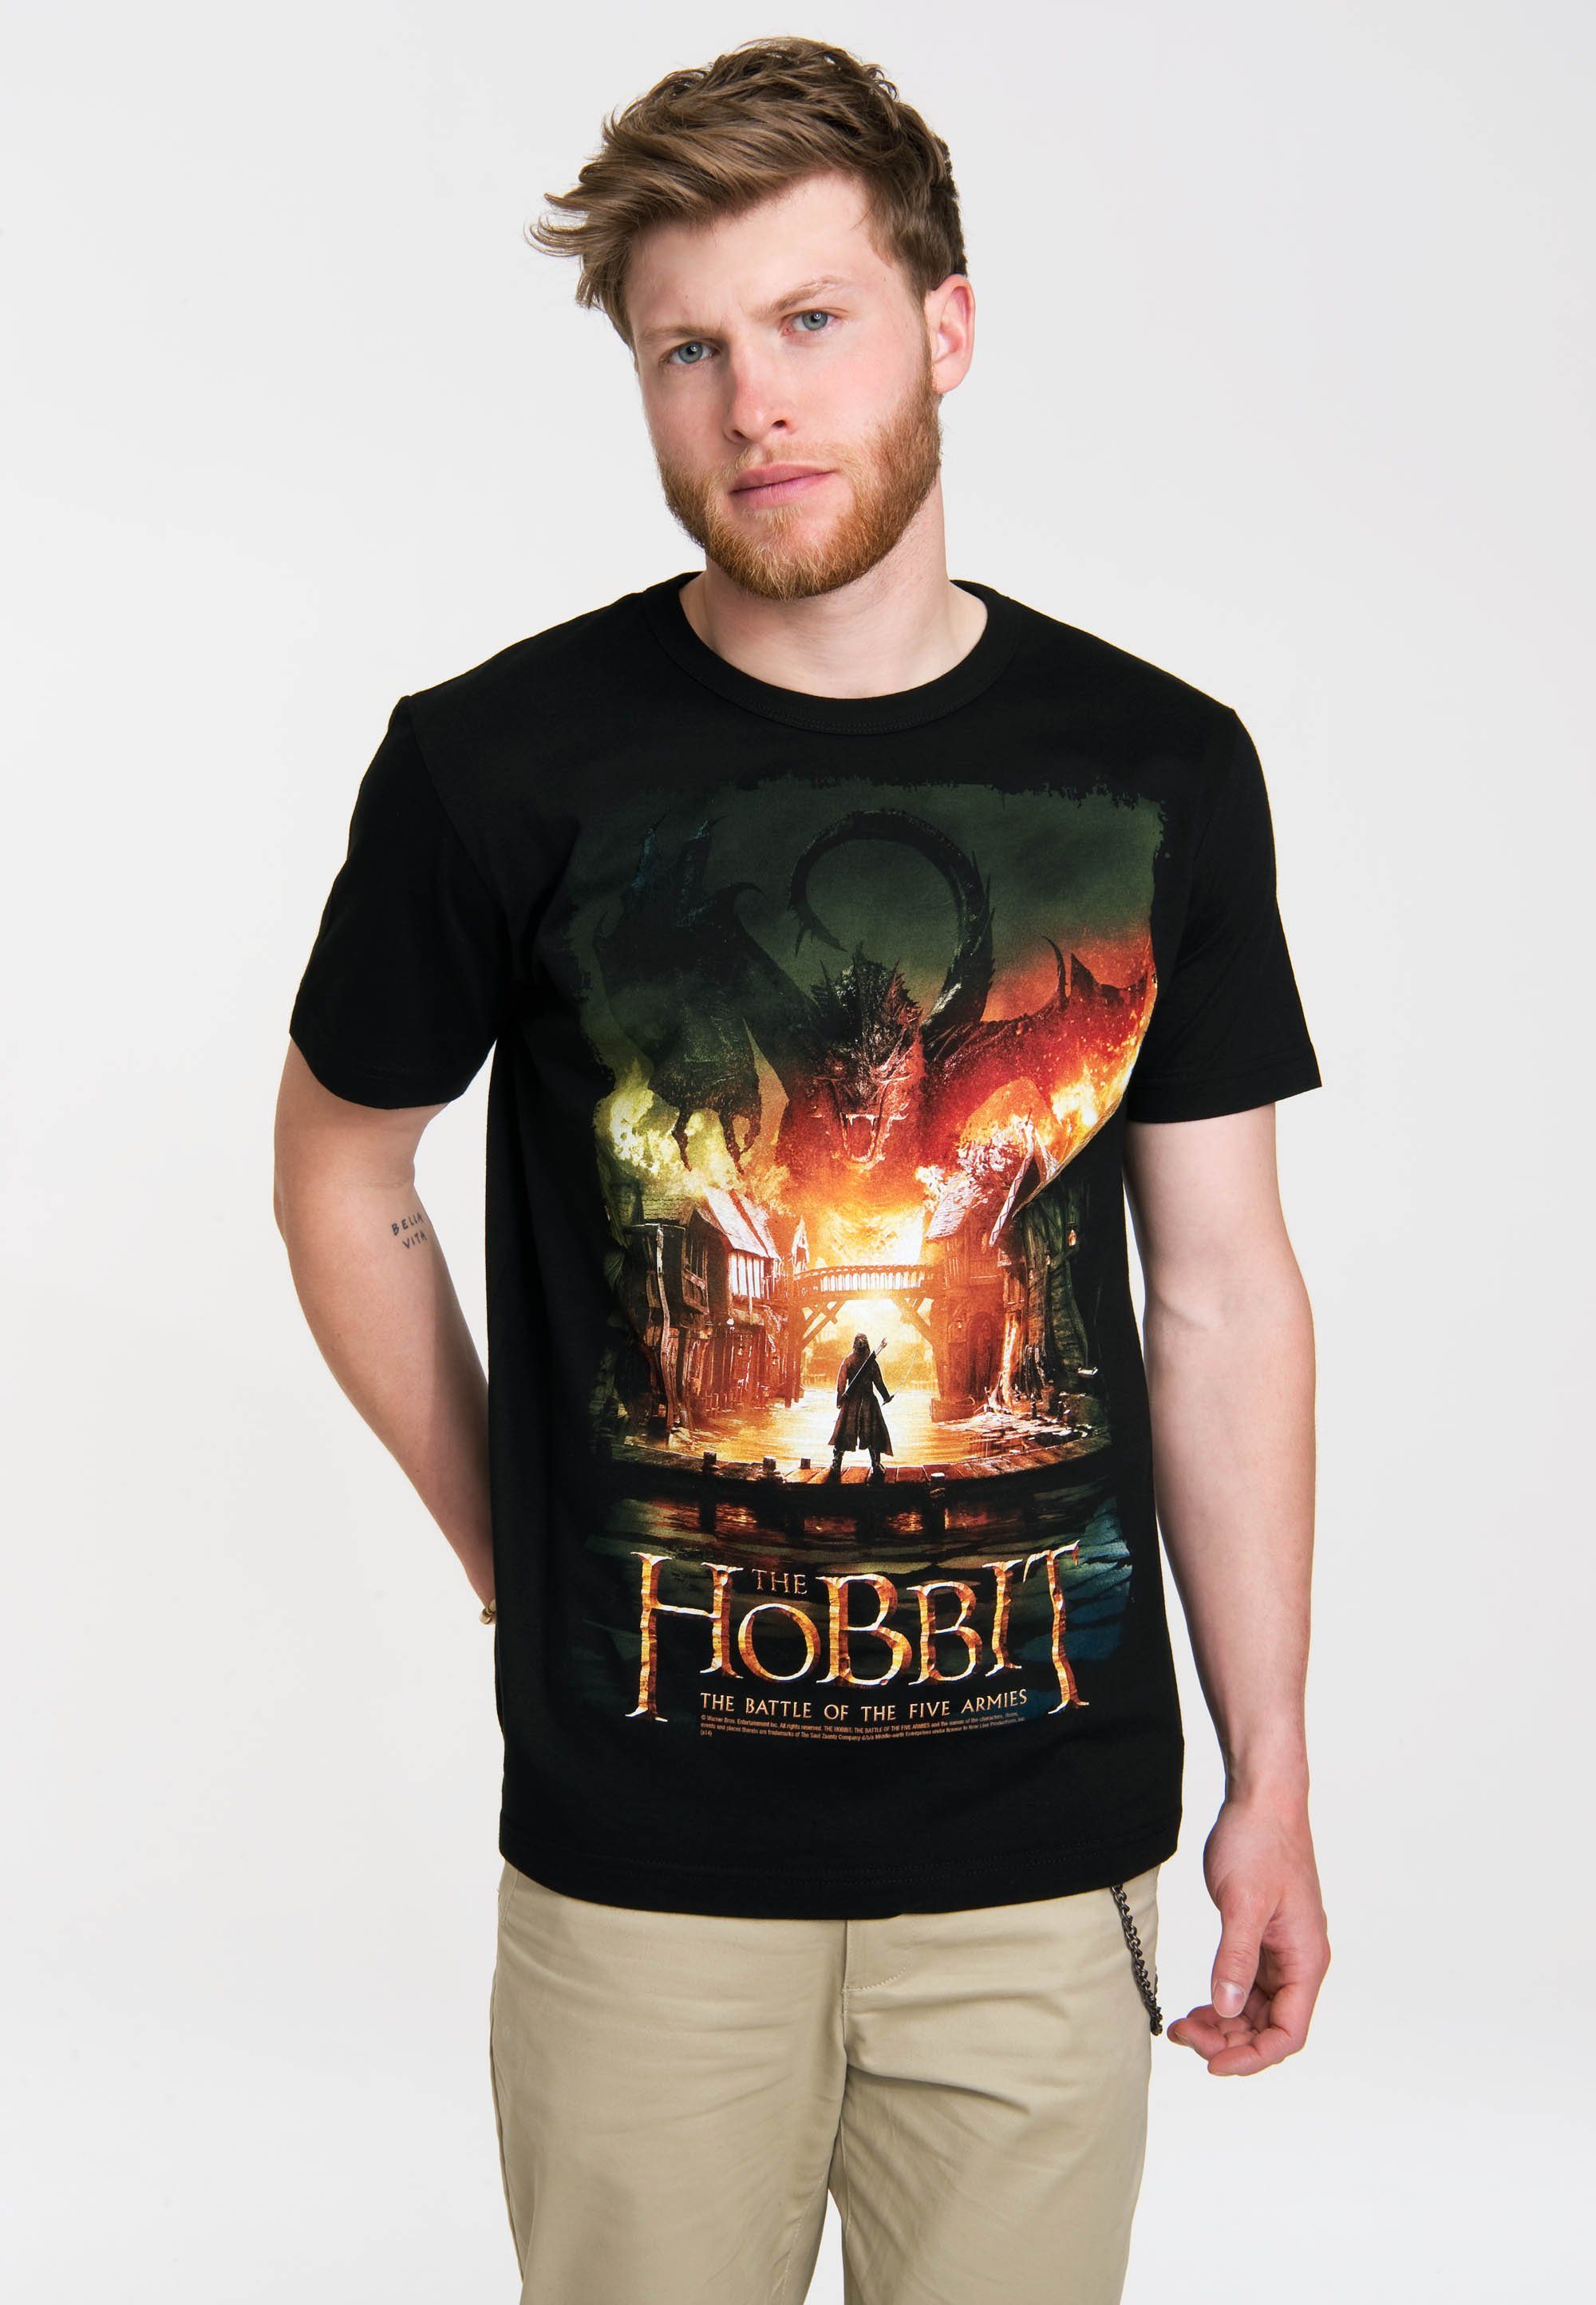 LOGOSHIRT T-Shirt Der Film-Motiv mit Heere der Schlacht Hobbit: Fünf tollem Die